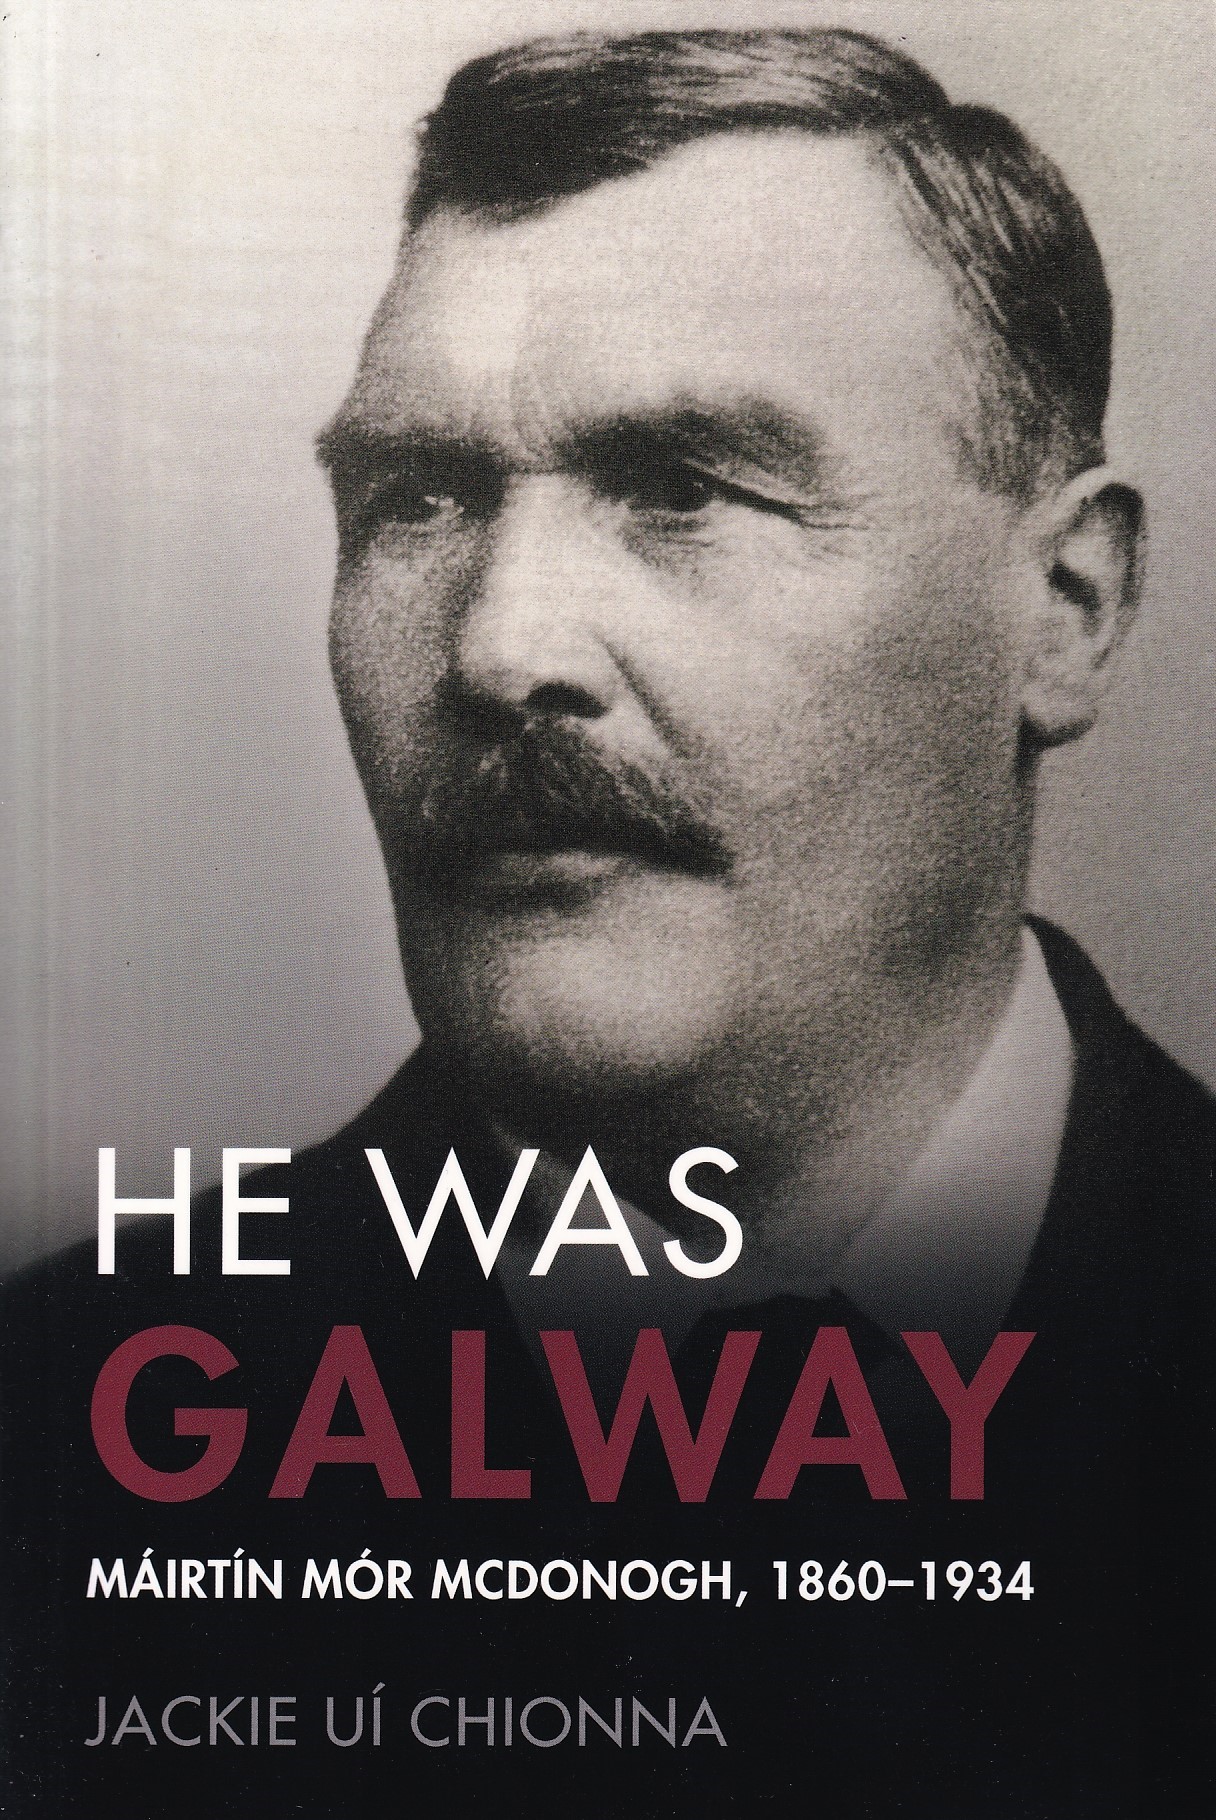 He was Galway: Máirtín Mór McDonogh, 1860-1934 by Jackie Uí Chionna